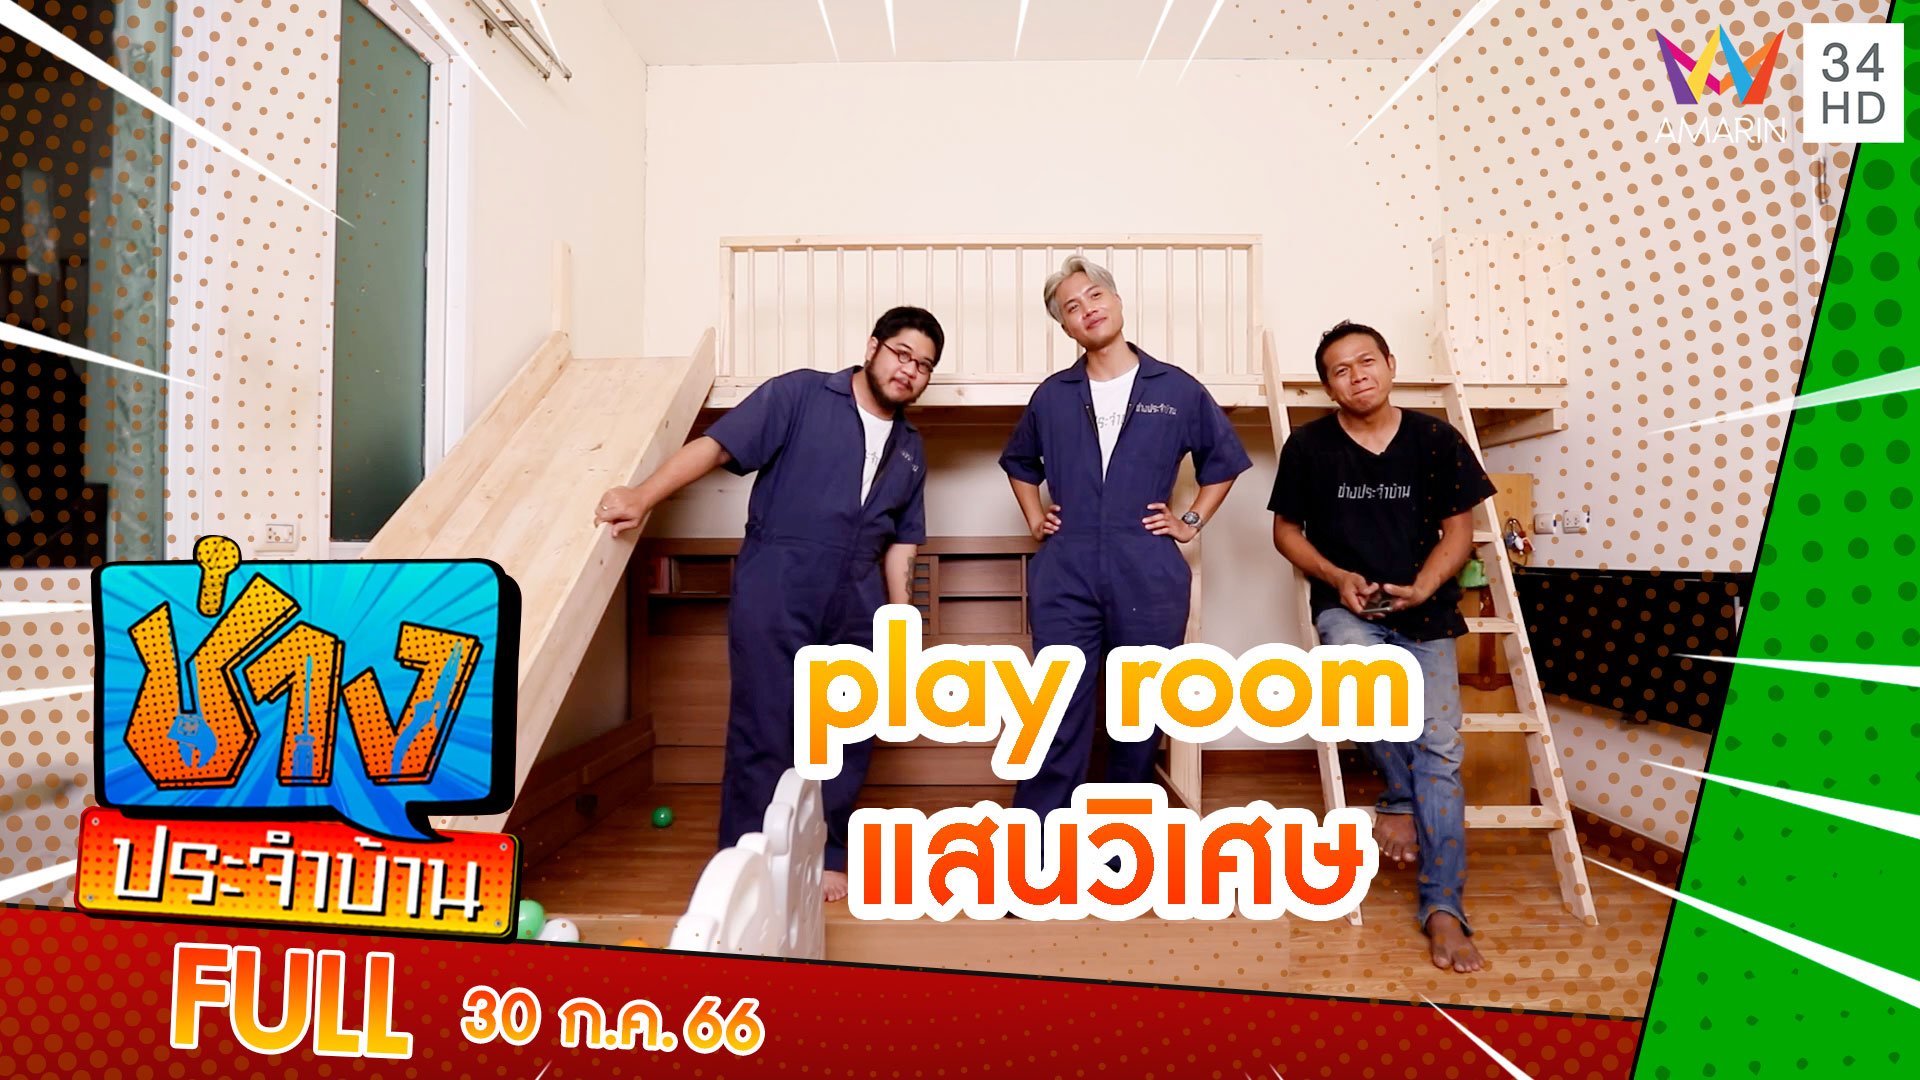 เนรมิตห้องนอน ให้กลายเป็น play room แสนวิเศษ | ช่างประจำบ้าน | 30 ก.ค. 66 | AMARIN TVHD34